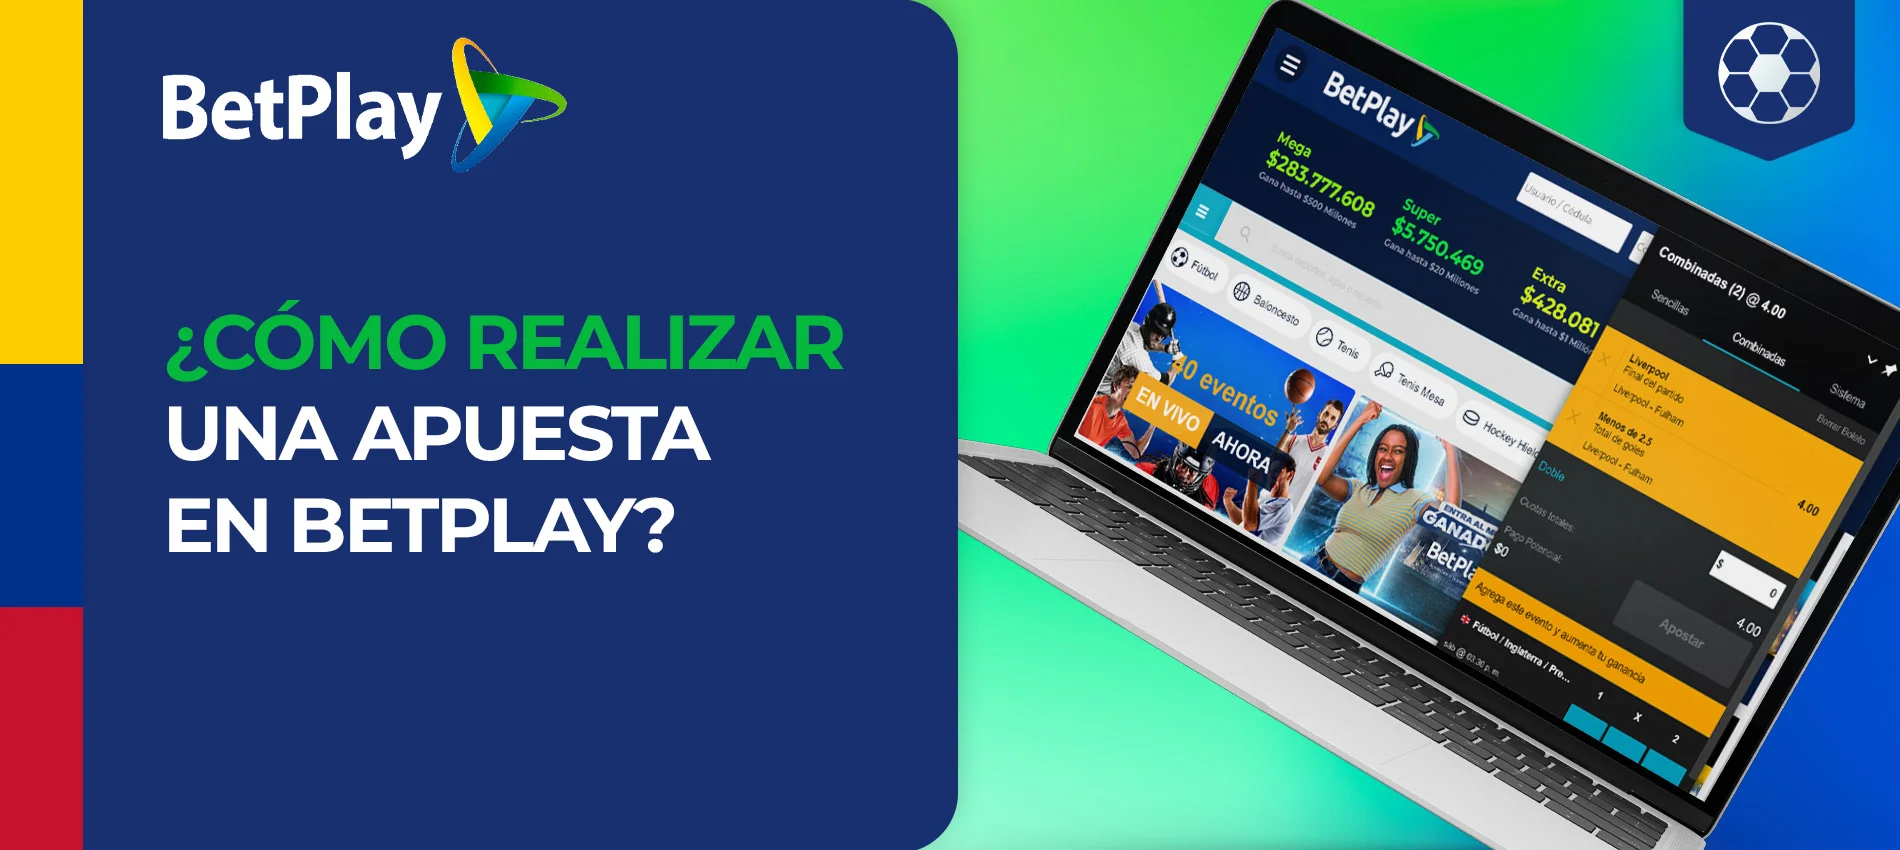 Apuestas y juegos de azar en línea revisión de Betplay casa de apuestas en Colombia